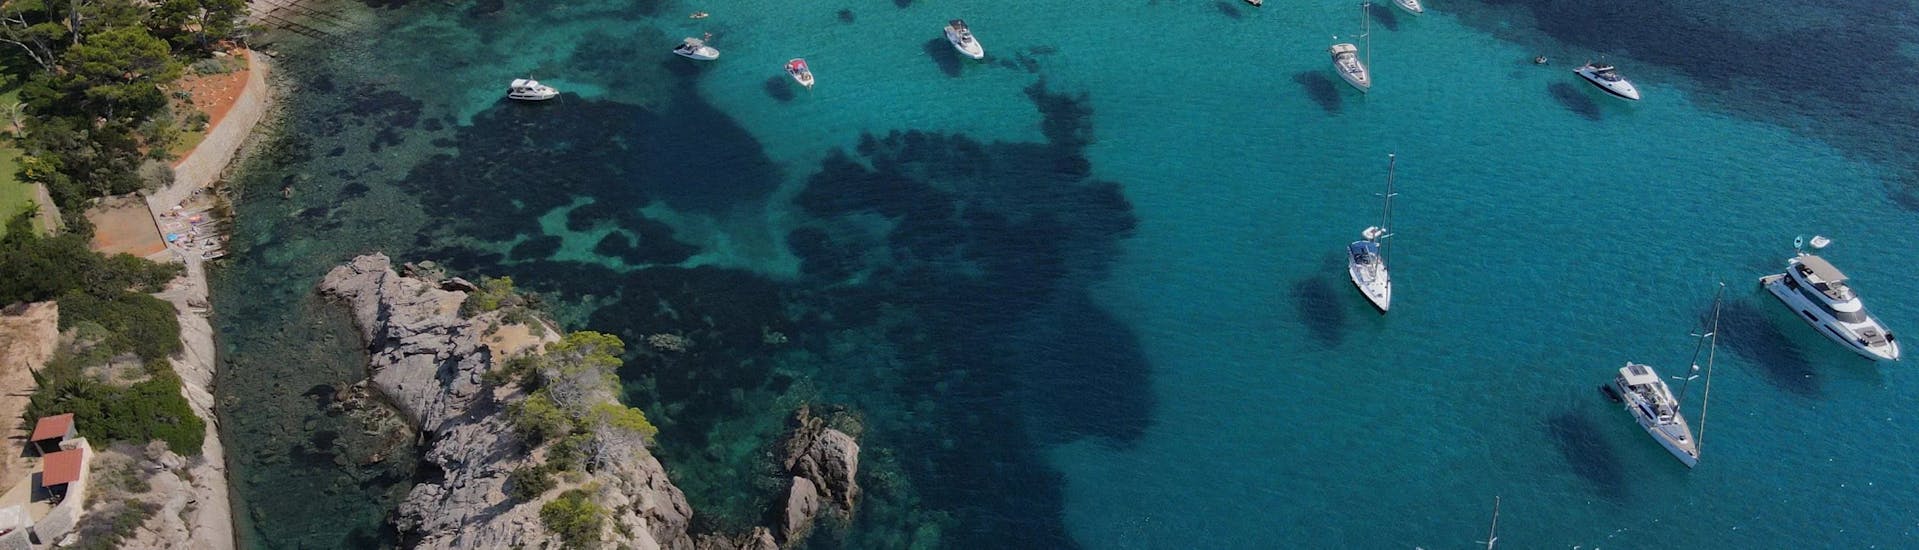 Bootsverleih in Santa Eulària, Ibiza (bis zu 8 Personen).